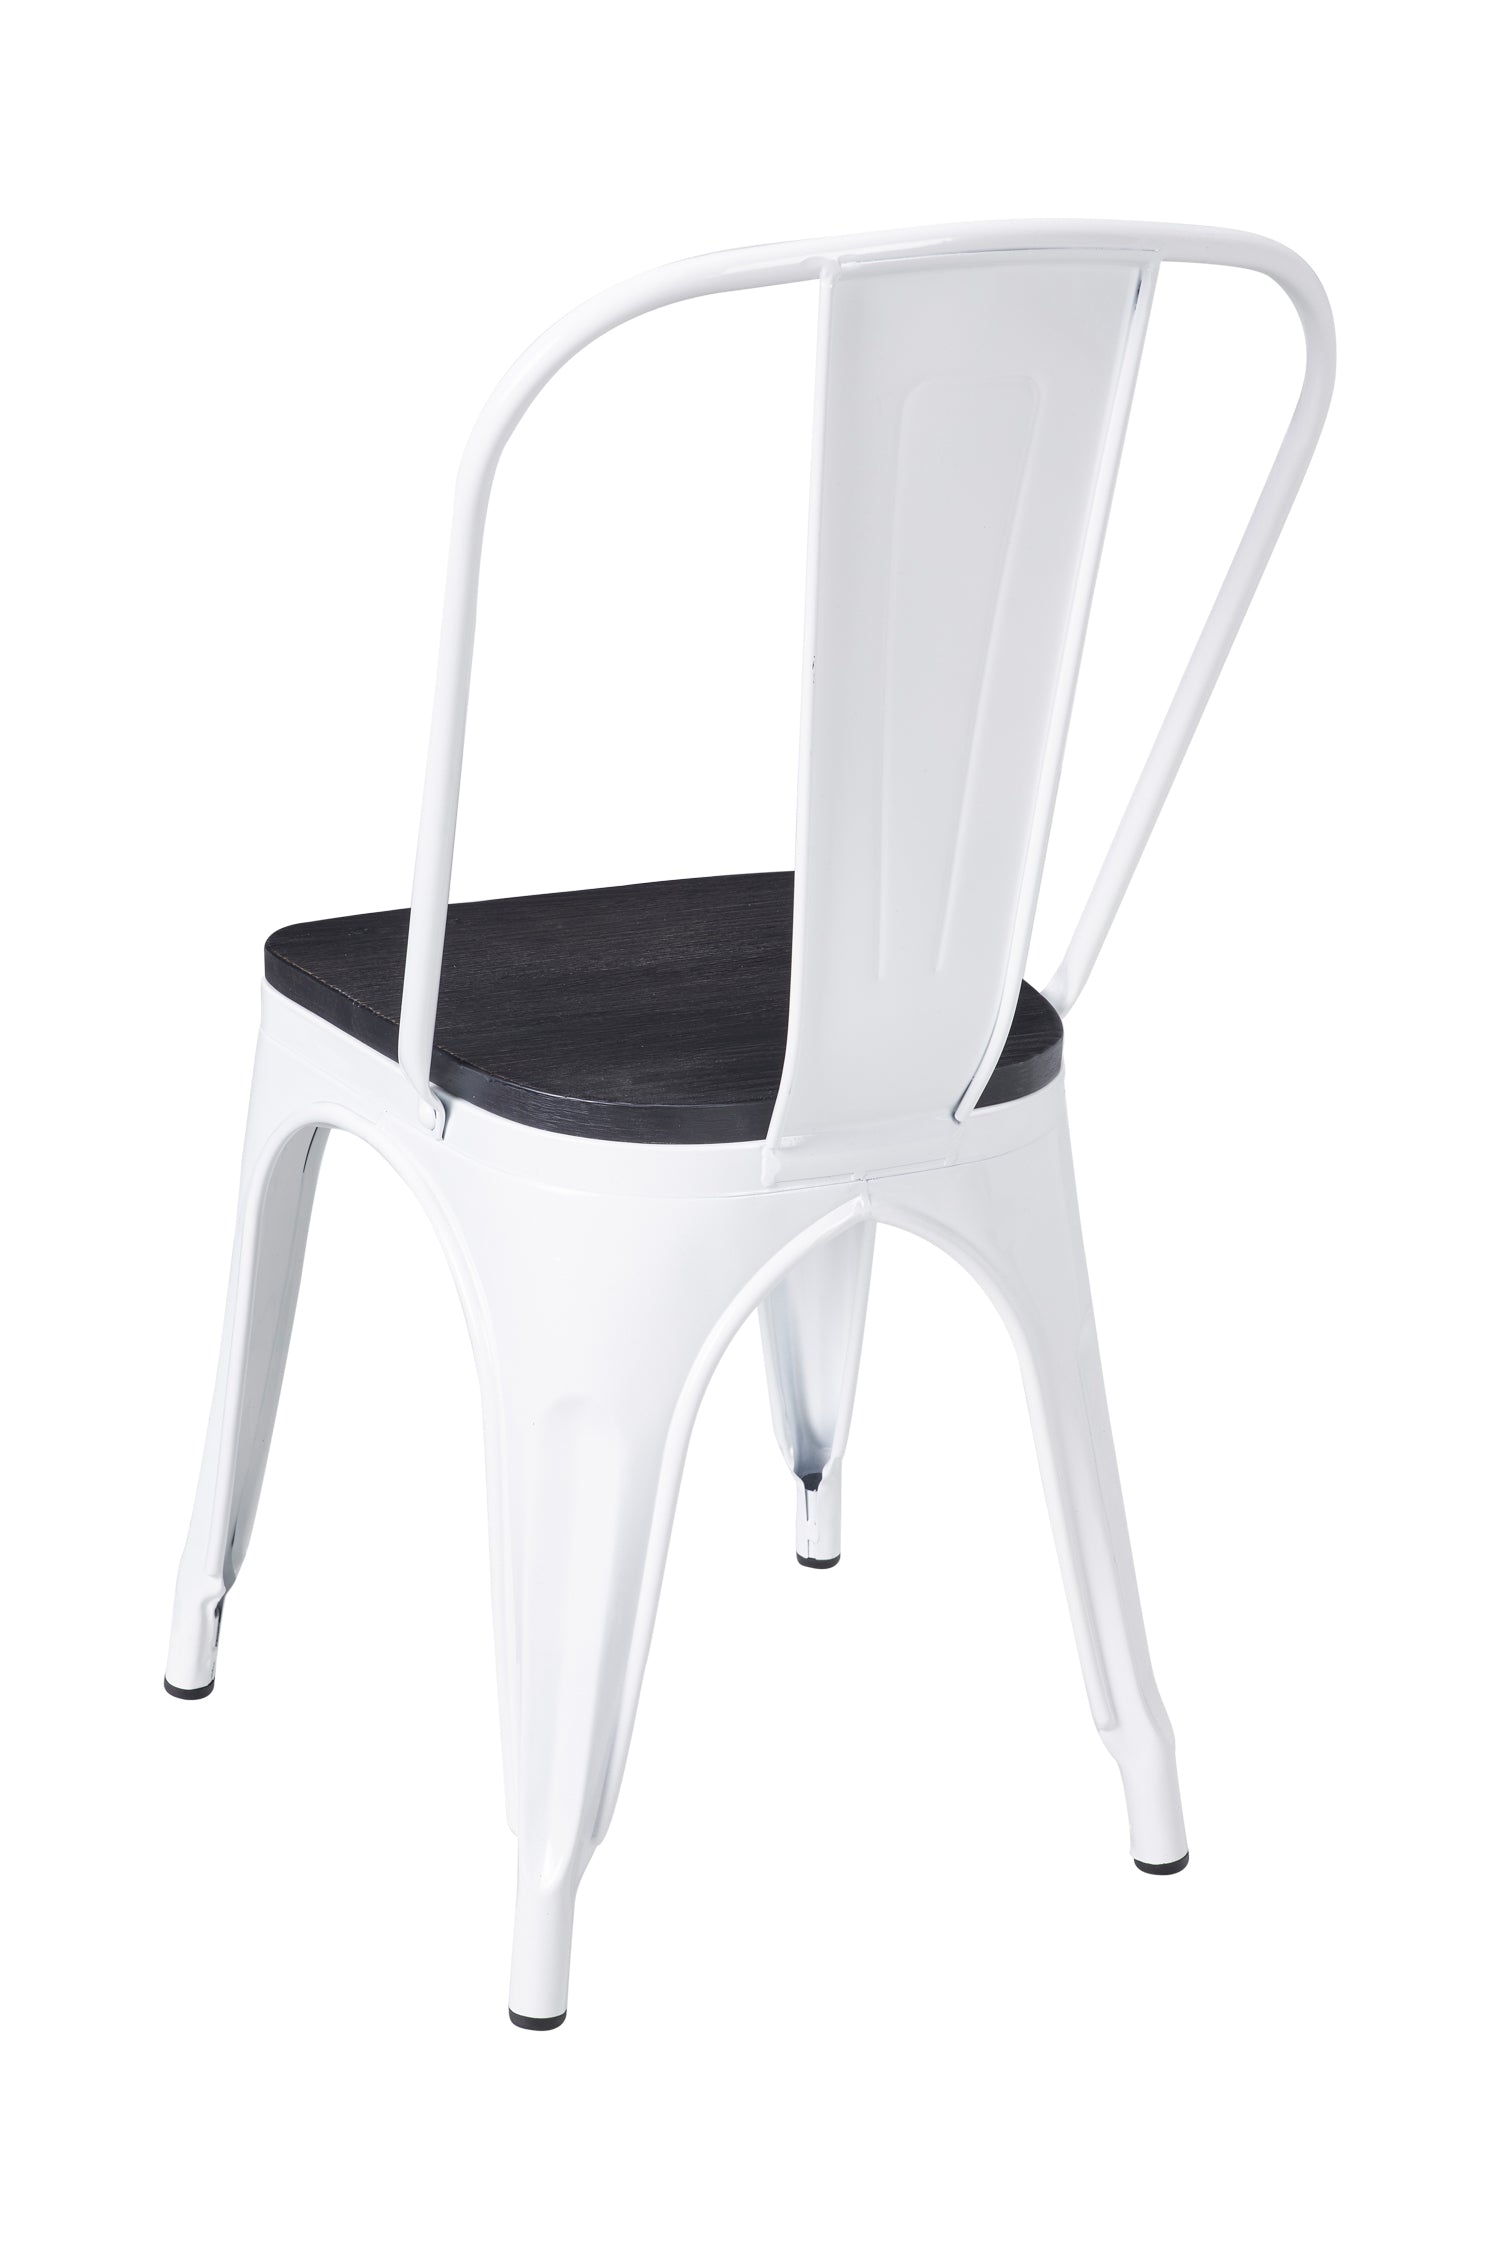 Novita home_AK-26/A_Cindy - sedia bianca con seduta legno_1